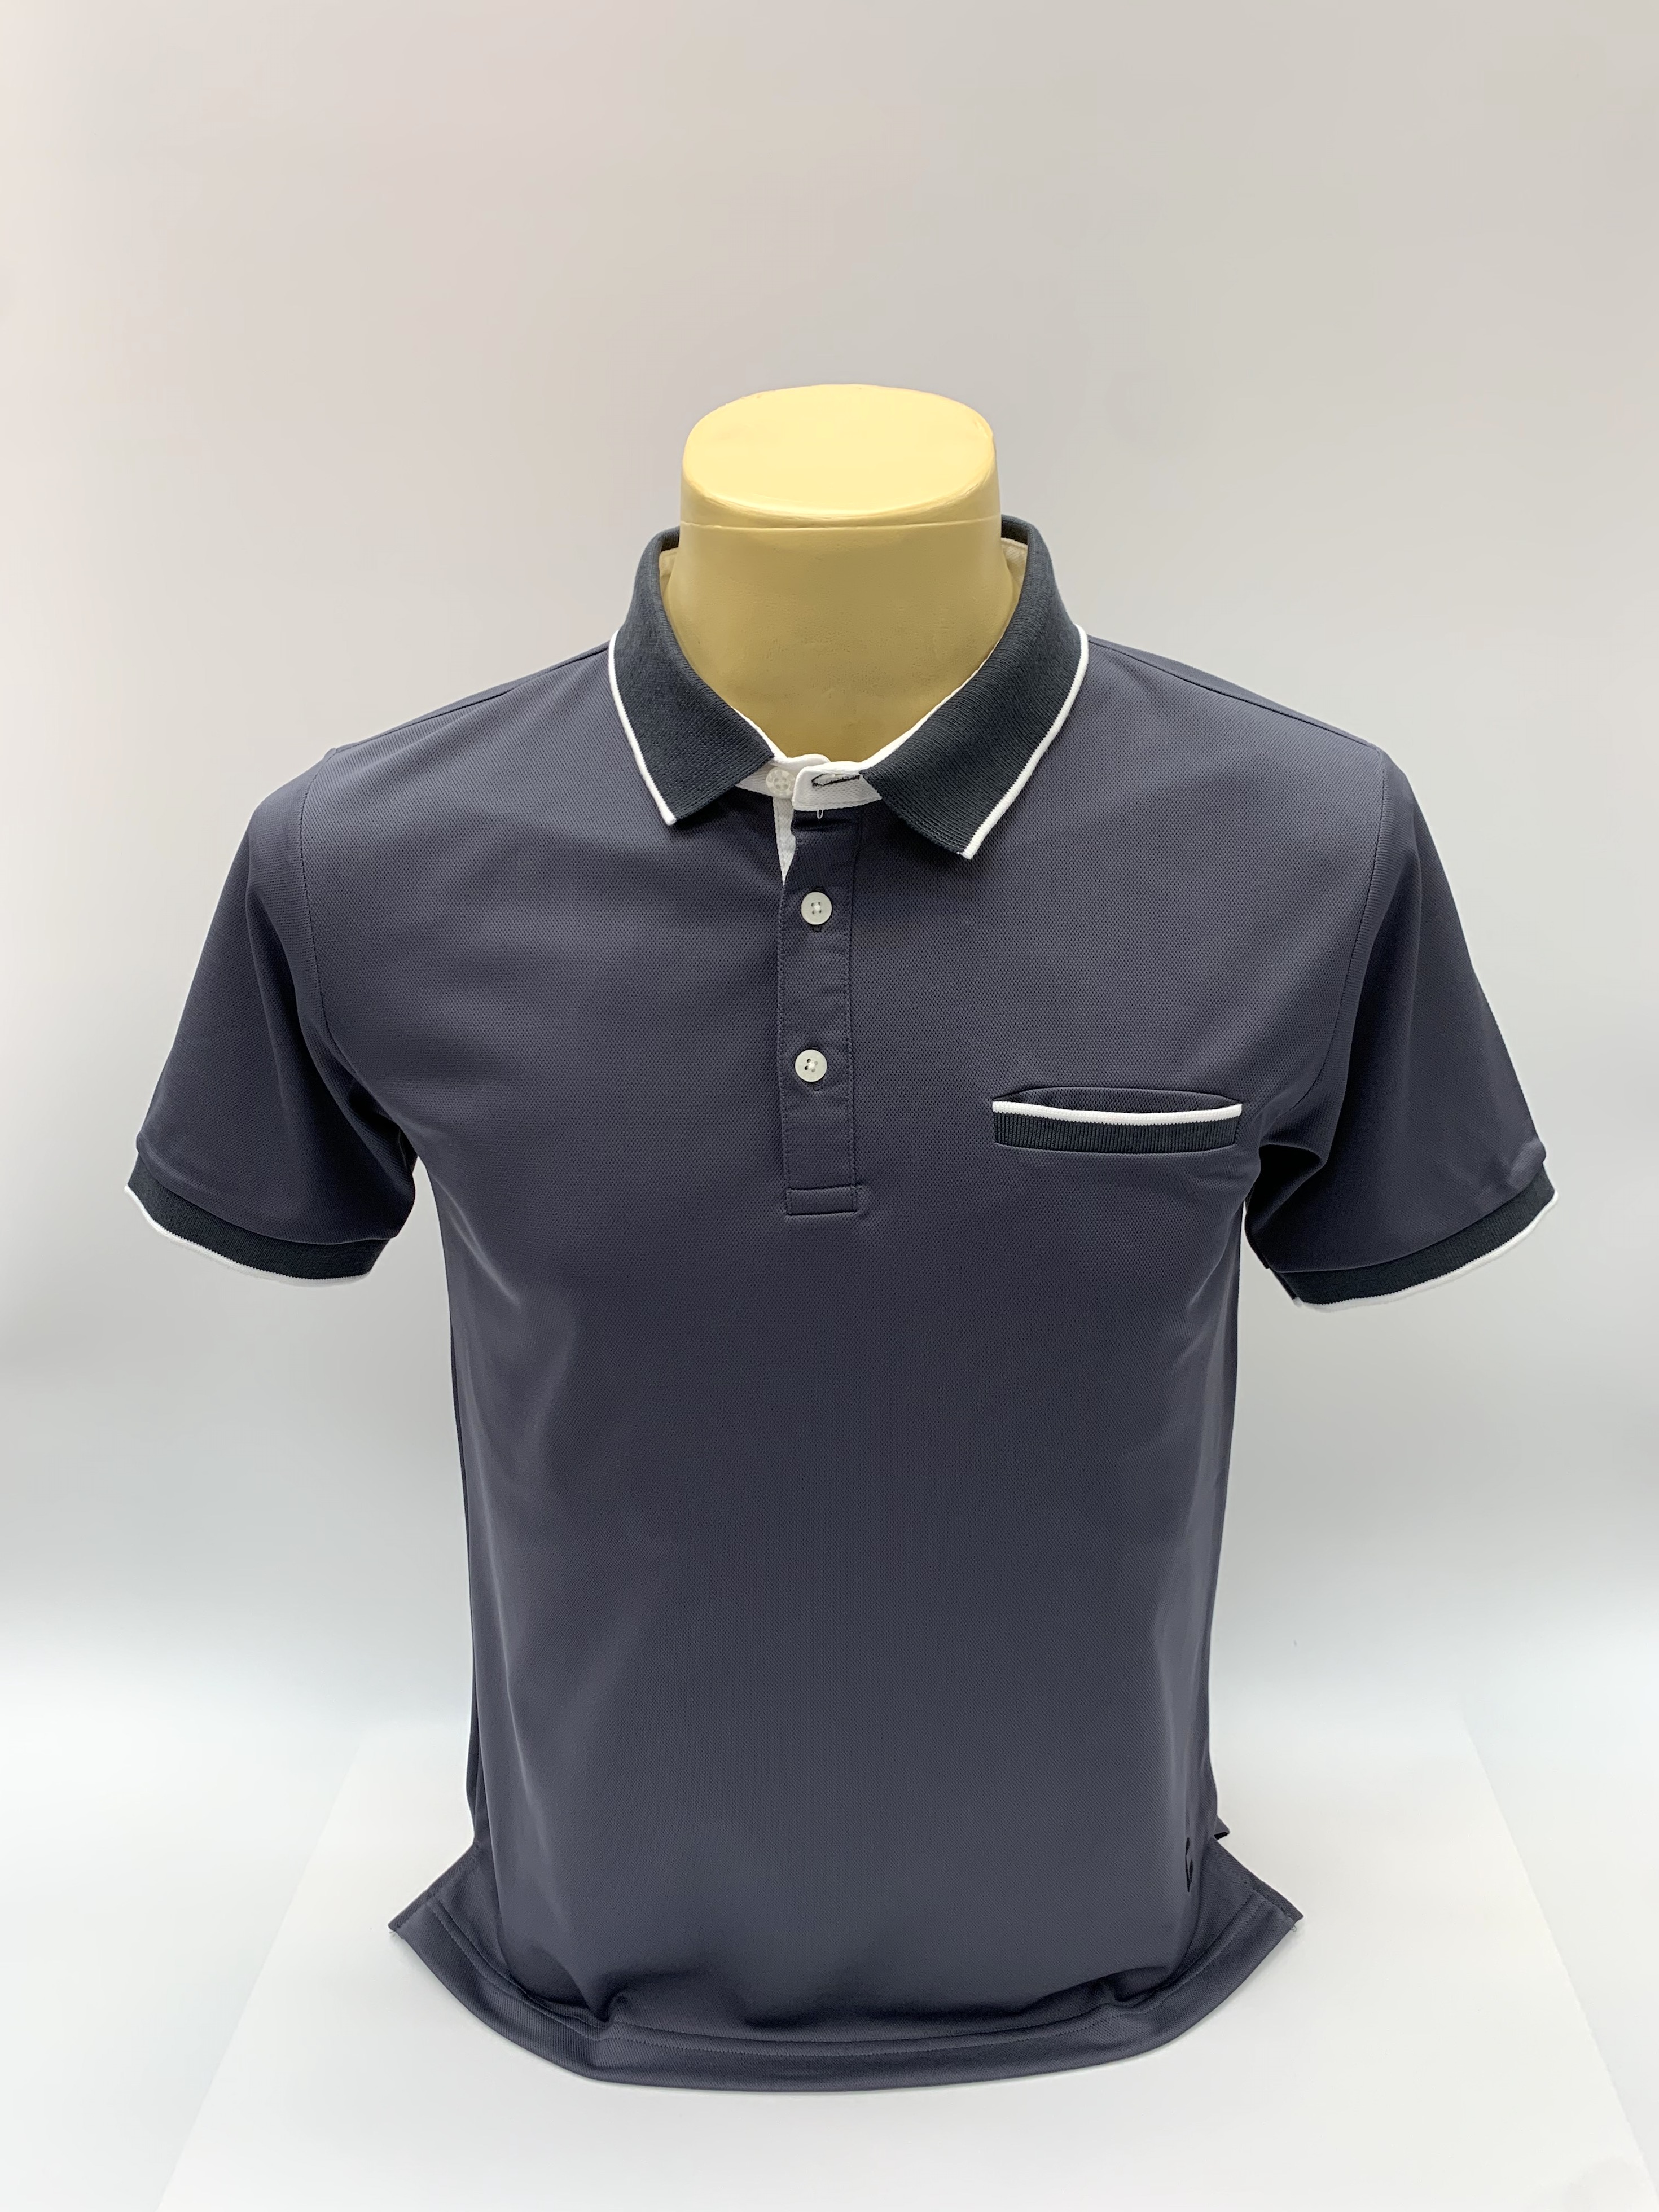 เสื้อคอโปโลแขนสั้น ผ้าดรายเทค (Dry Technology) มีกระเป๋าที่อกยี่ห้อ C59 AIR # 087 เสื้อคอปก เสื้อผู้ชาย เสื้อสีพื้น Kingberry Shop